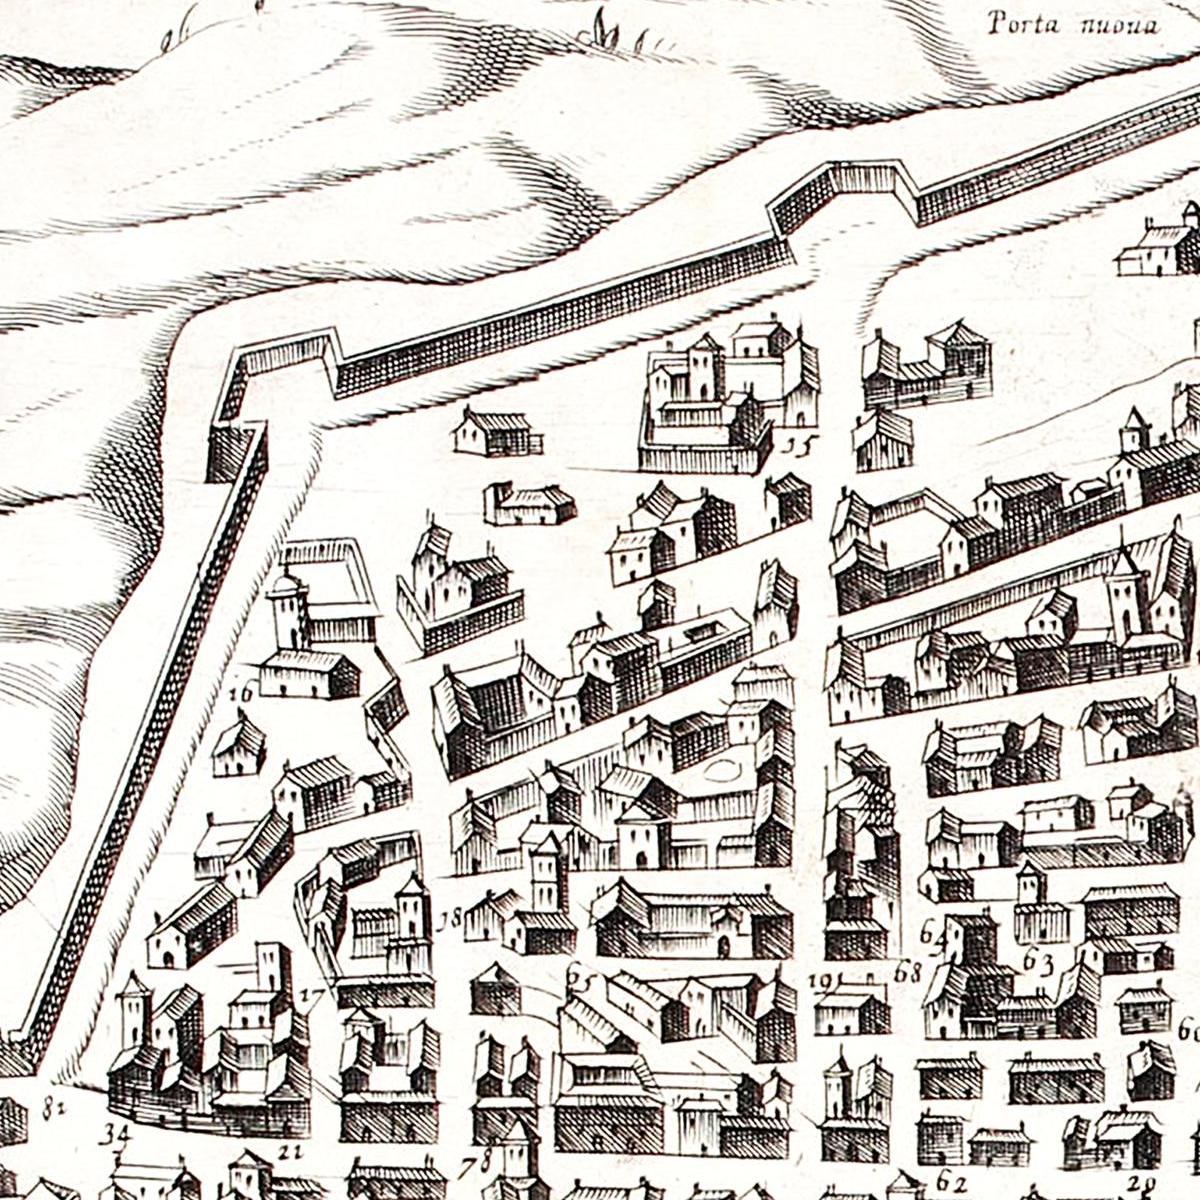 Historischer Stadtplan Parma um 1567